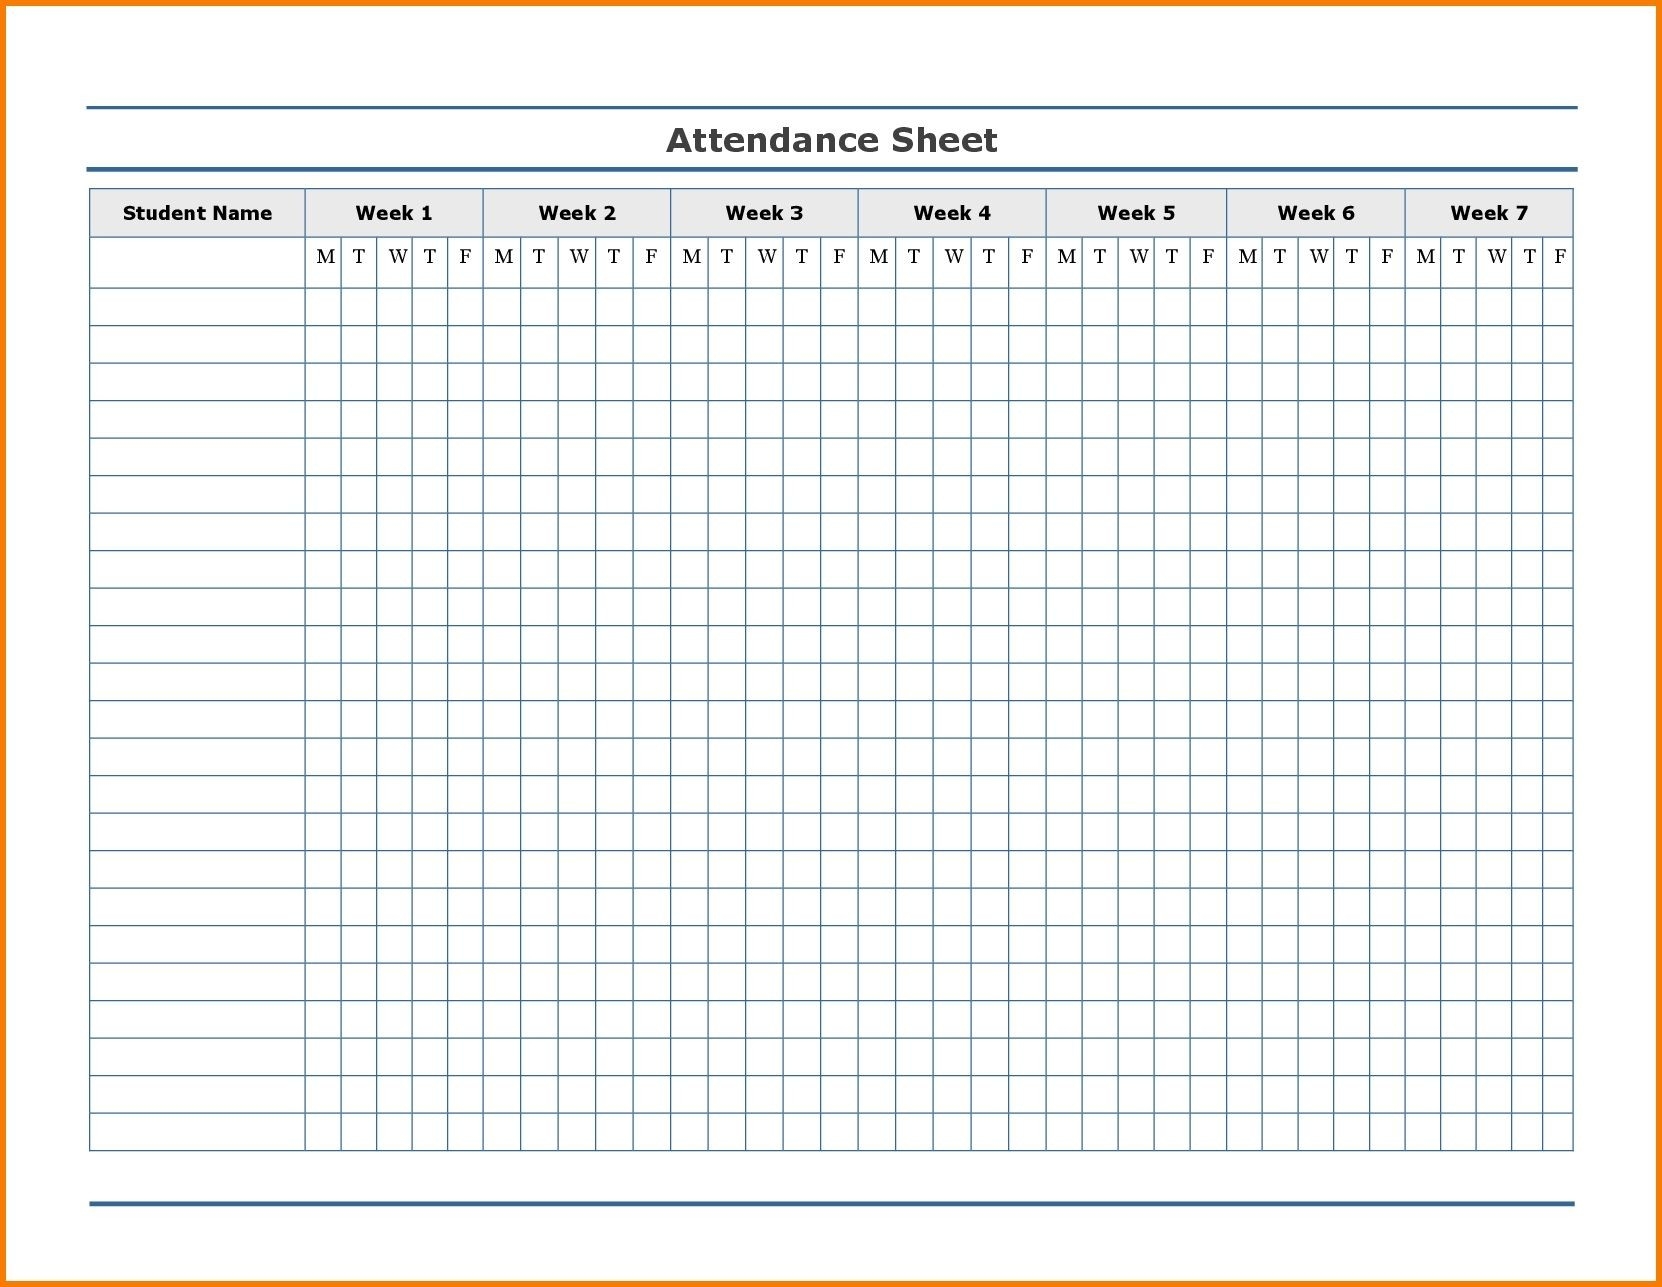 Free Employee Attendance Calendar | Employee Tracker-2020 Employee Attendance Calendar Templates